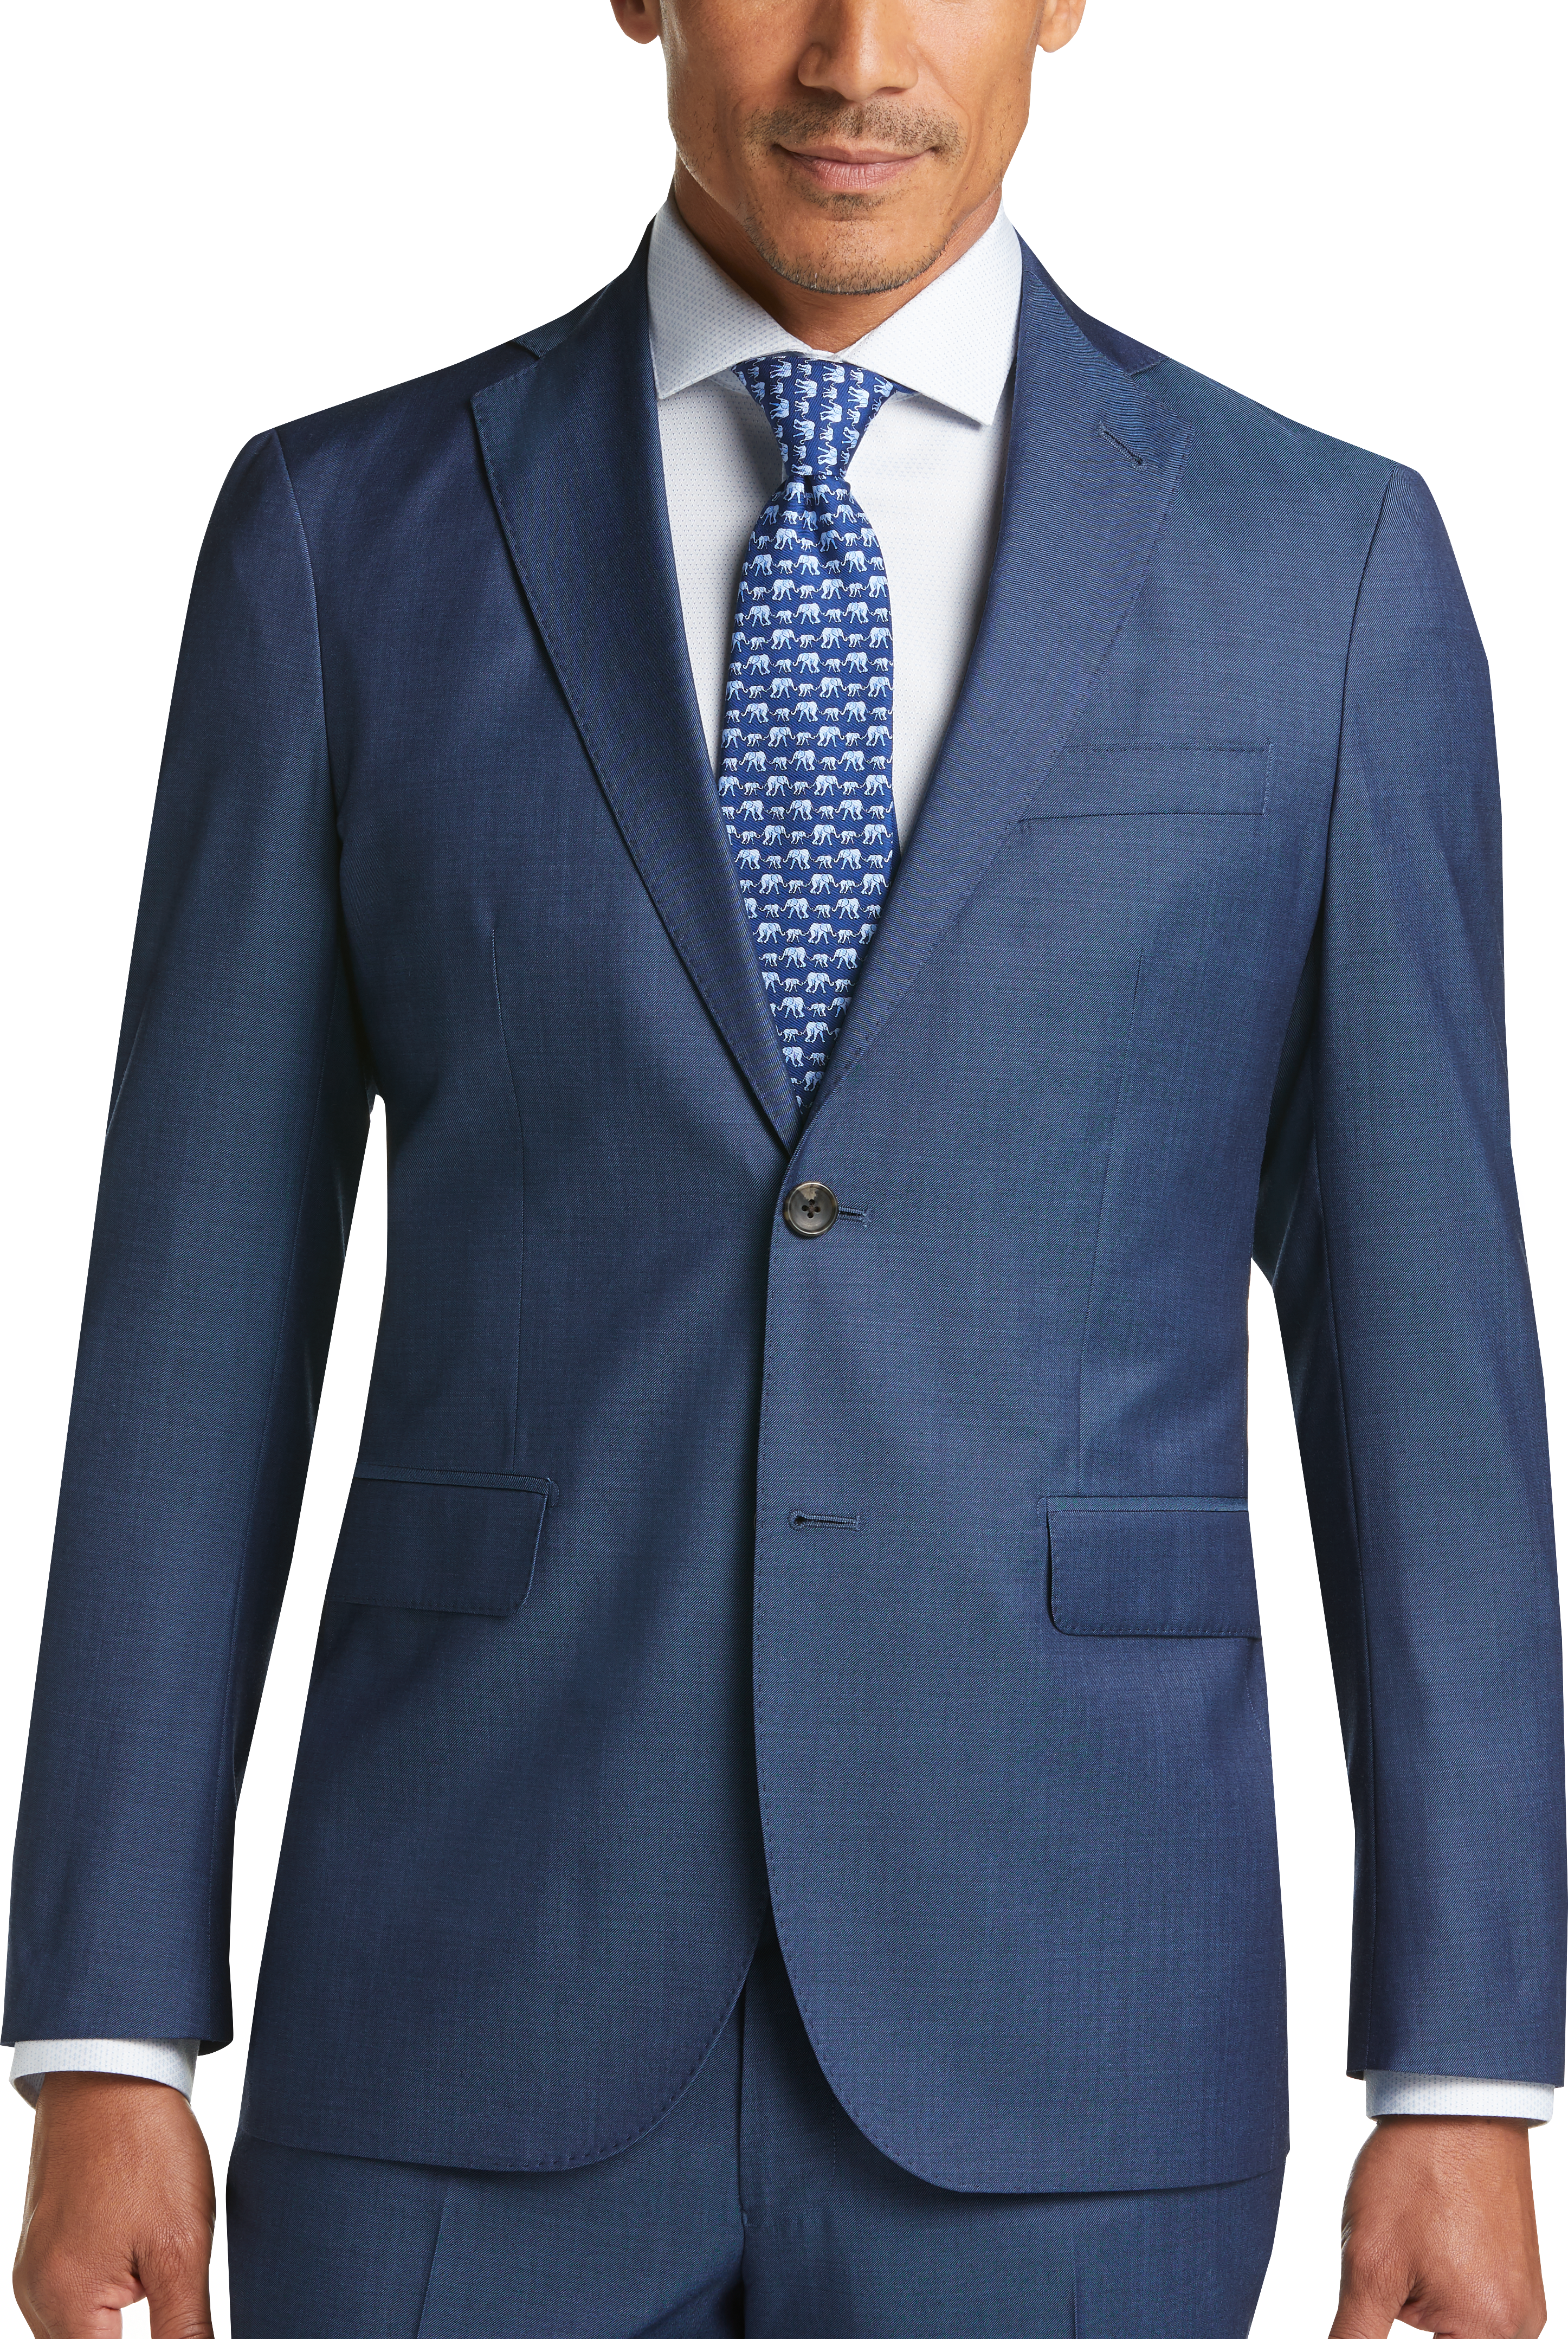 Strong Suit Blue Extreme Slim Fit Suit - Men's Suits | Men's Wearhouse